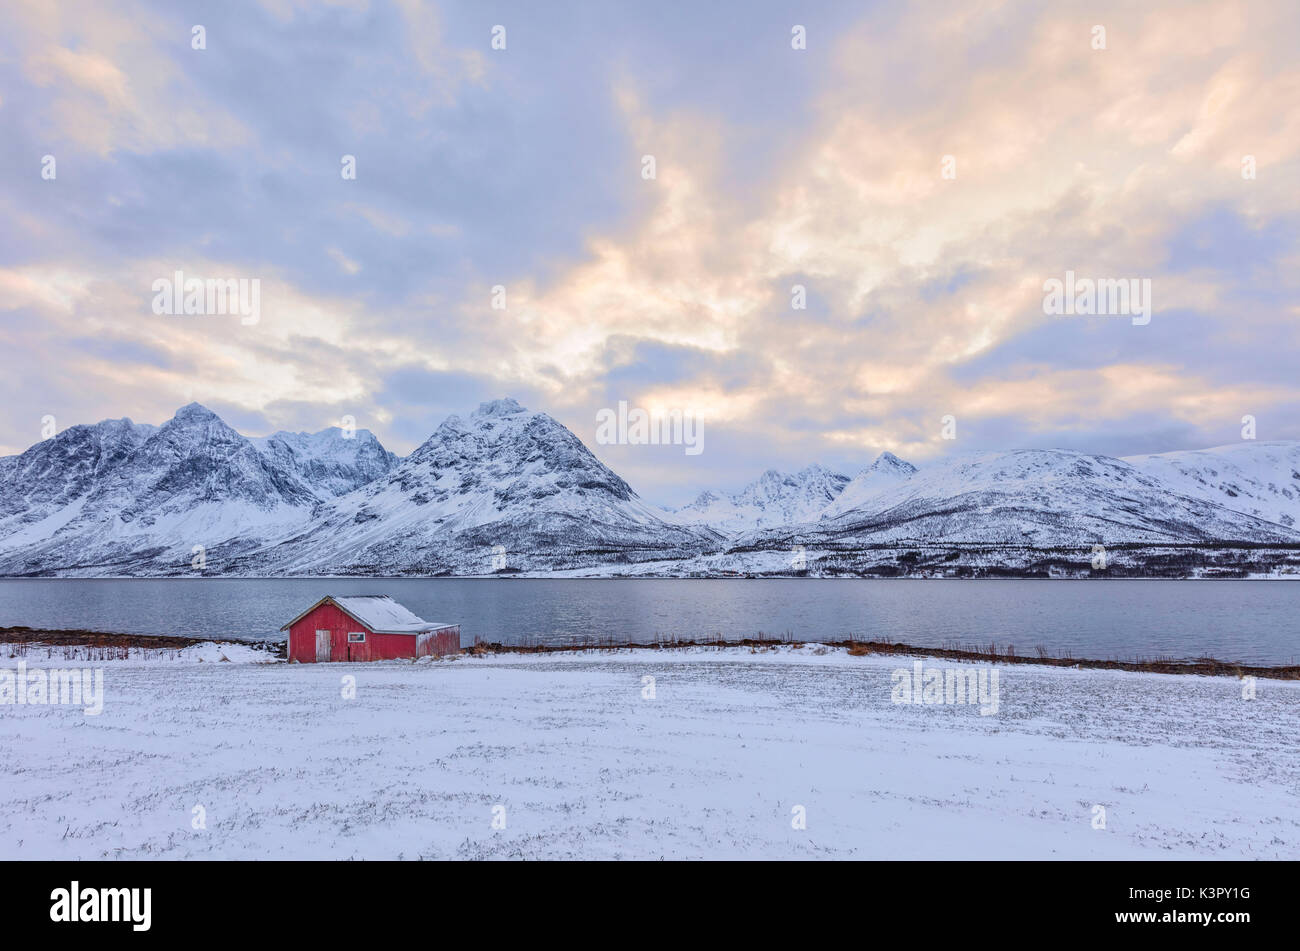 Typische Rorbu in der schneebedeckten Landschaft durch das gefrorene Meer und hohen Gipfeln Svensby Lyngen Alpen Tromsø Norwegen Europa umgeben Stockfoto